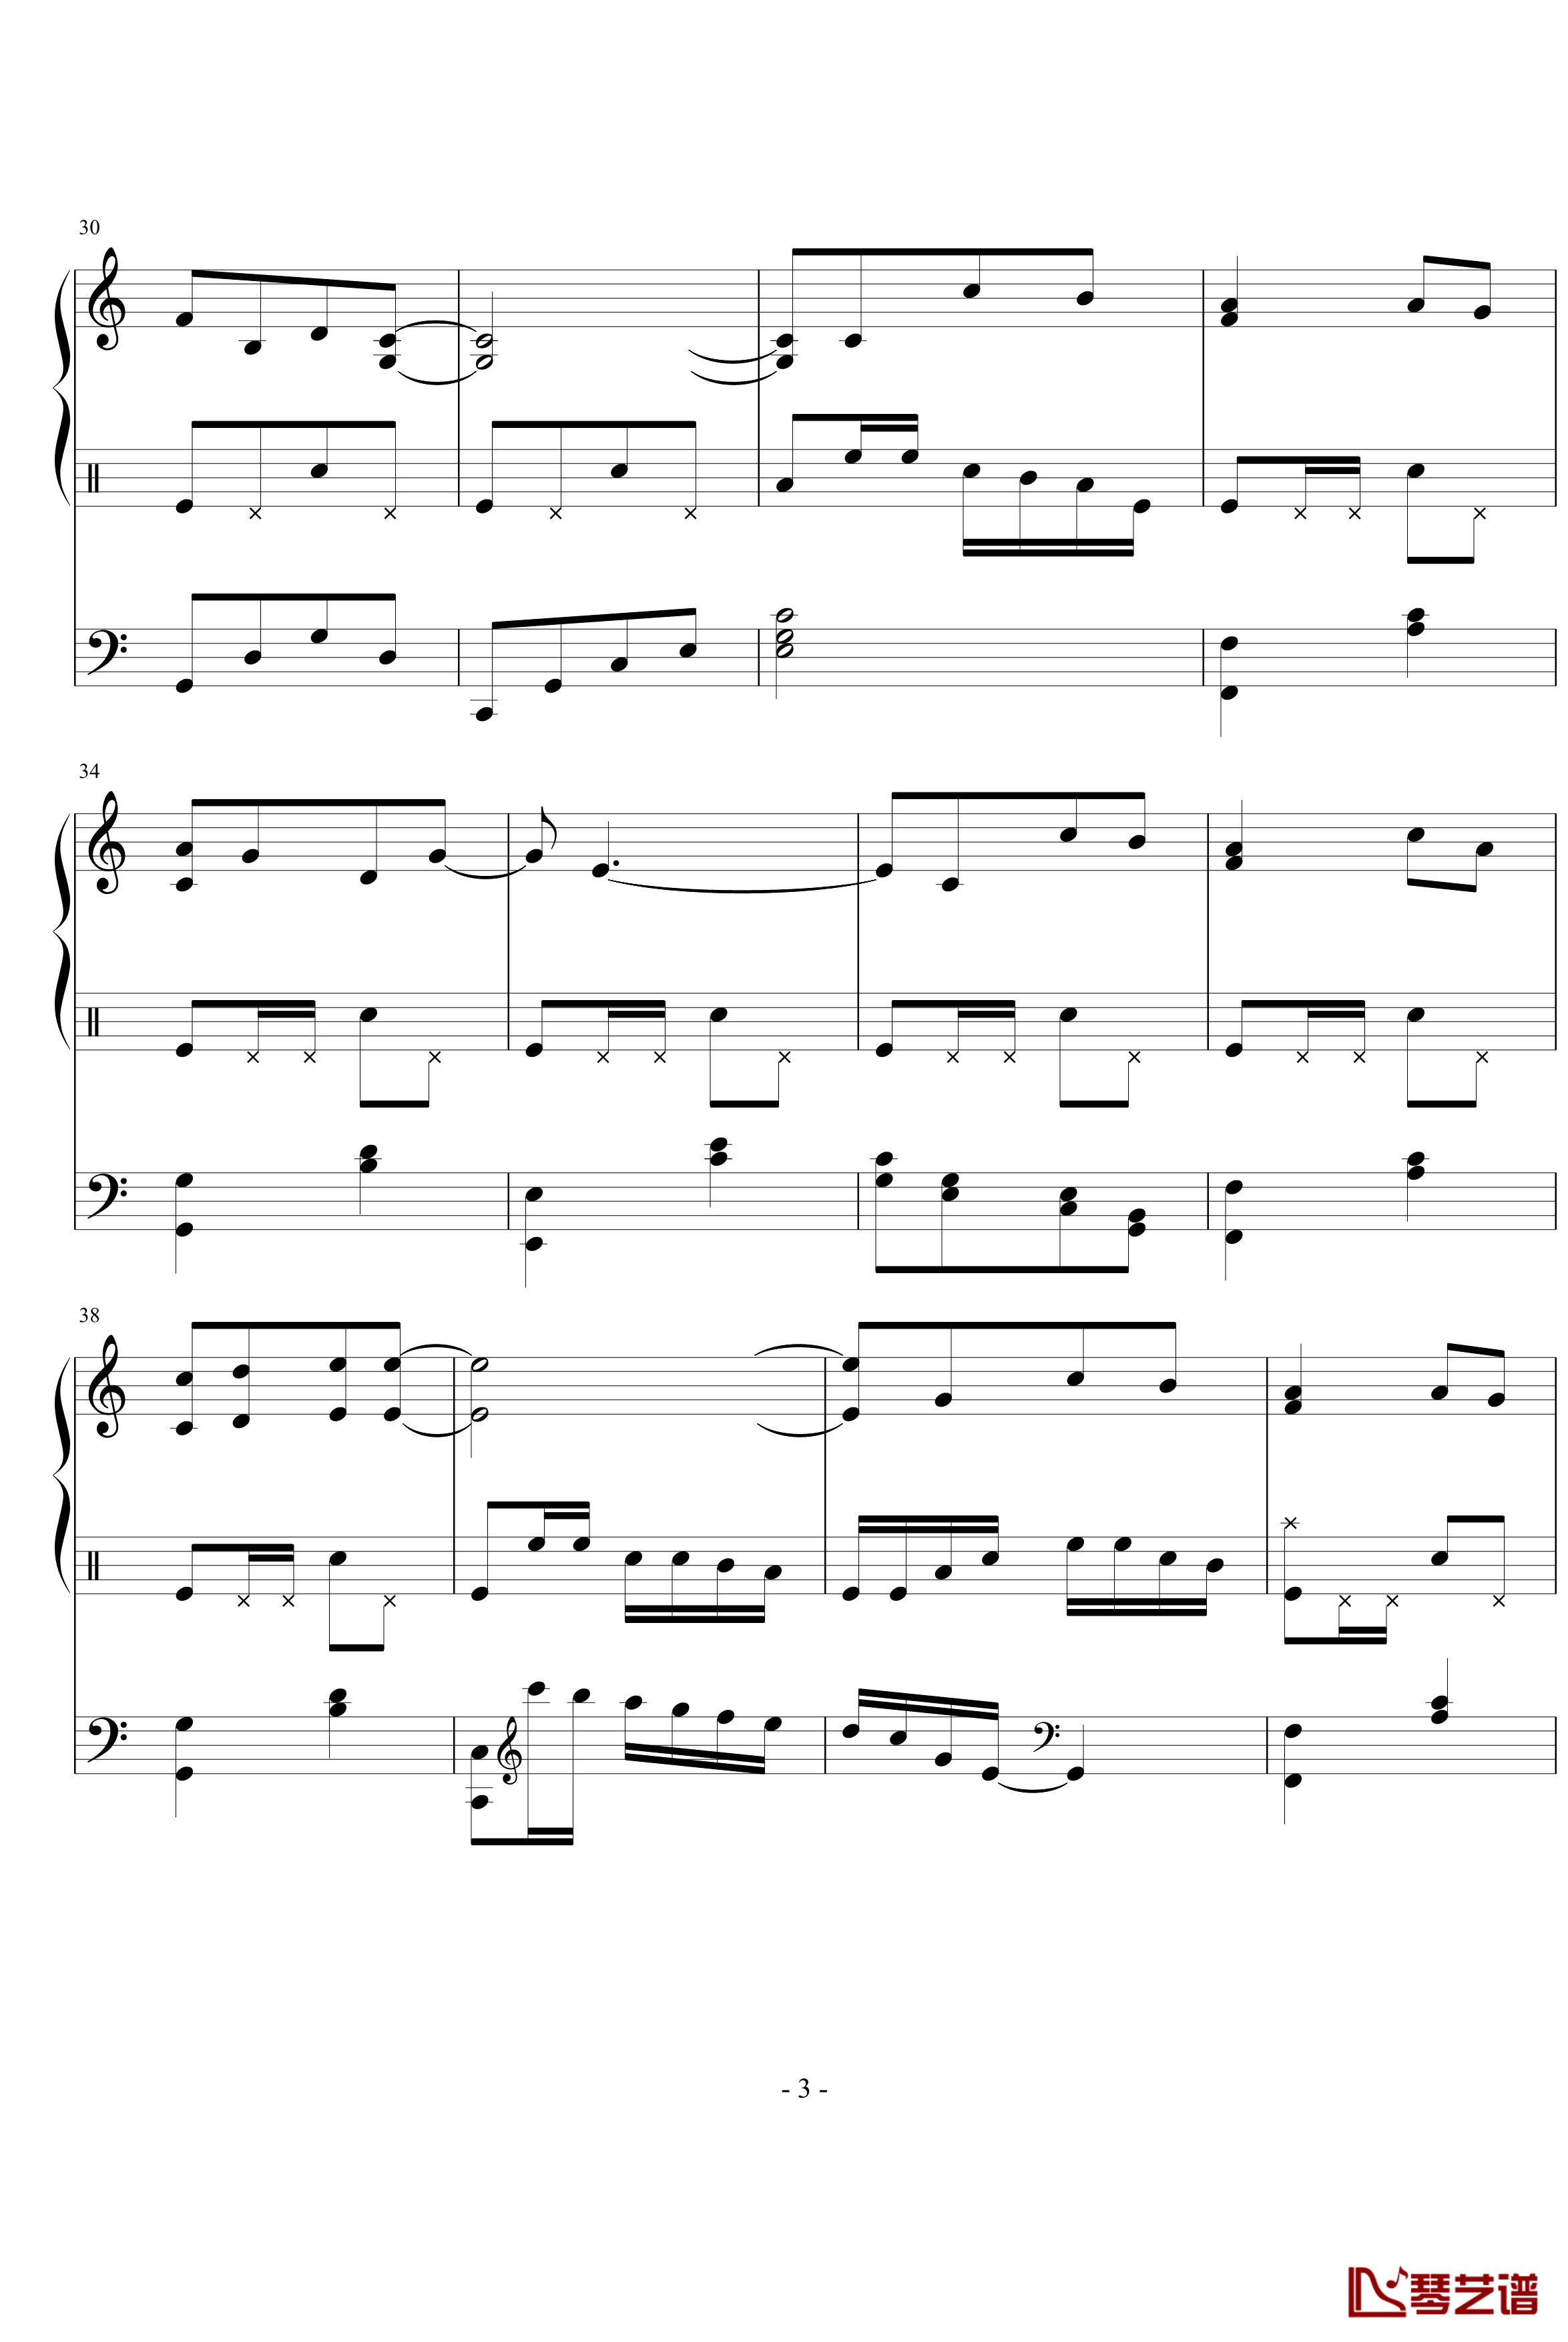 星月游乐园钢琴谱-199086hxy3